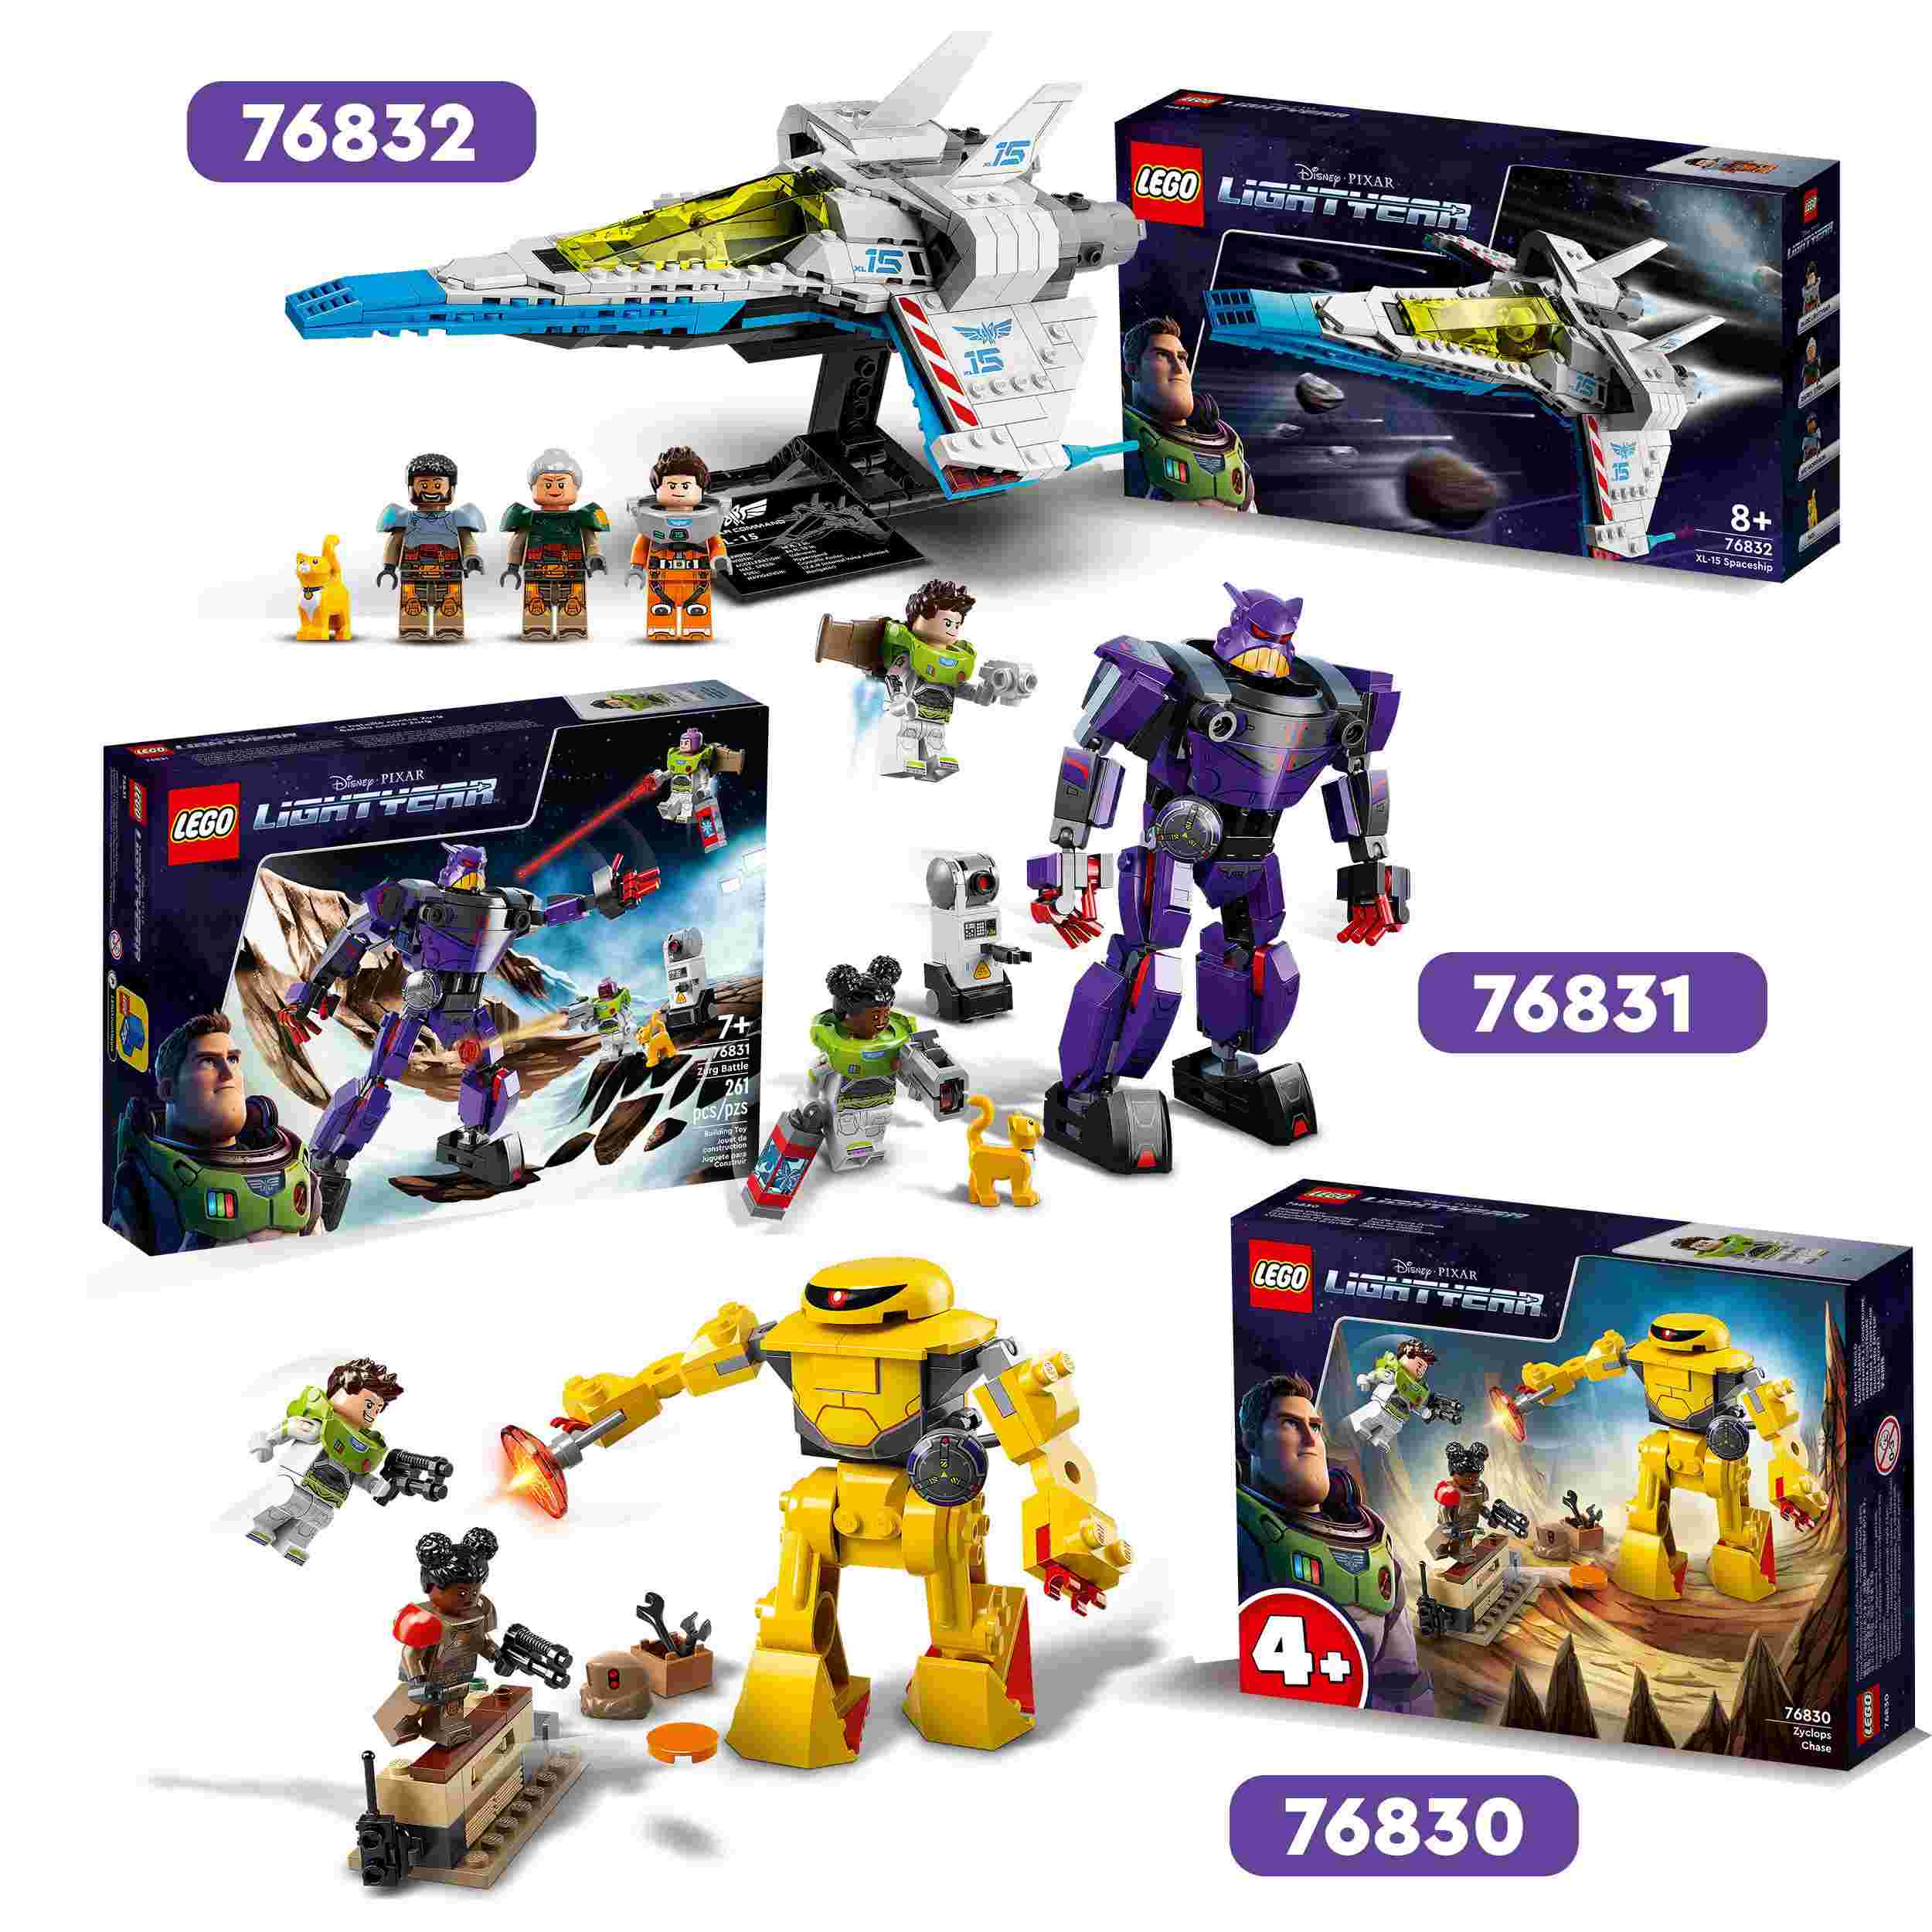 Lego lightyear disney e pixar 76831 battaglia di zurg, giochi per bambini dai 7 anni, minifigure di buzz e un action figure mech - Lightyear, Lego